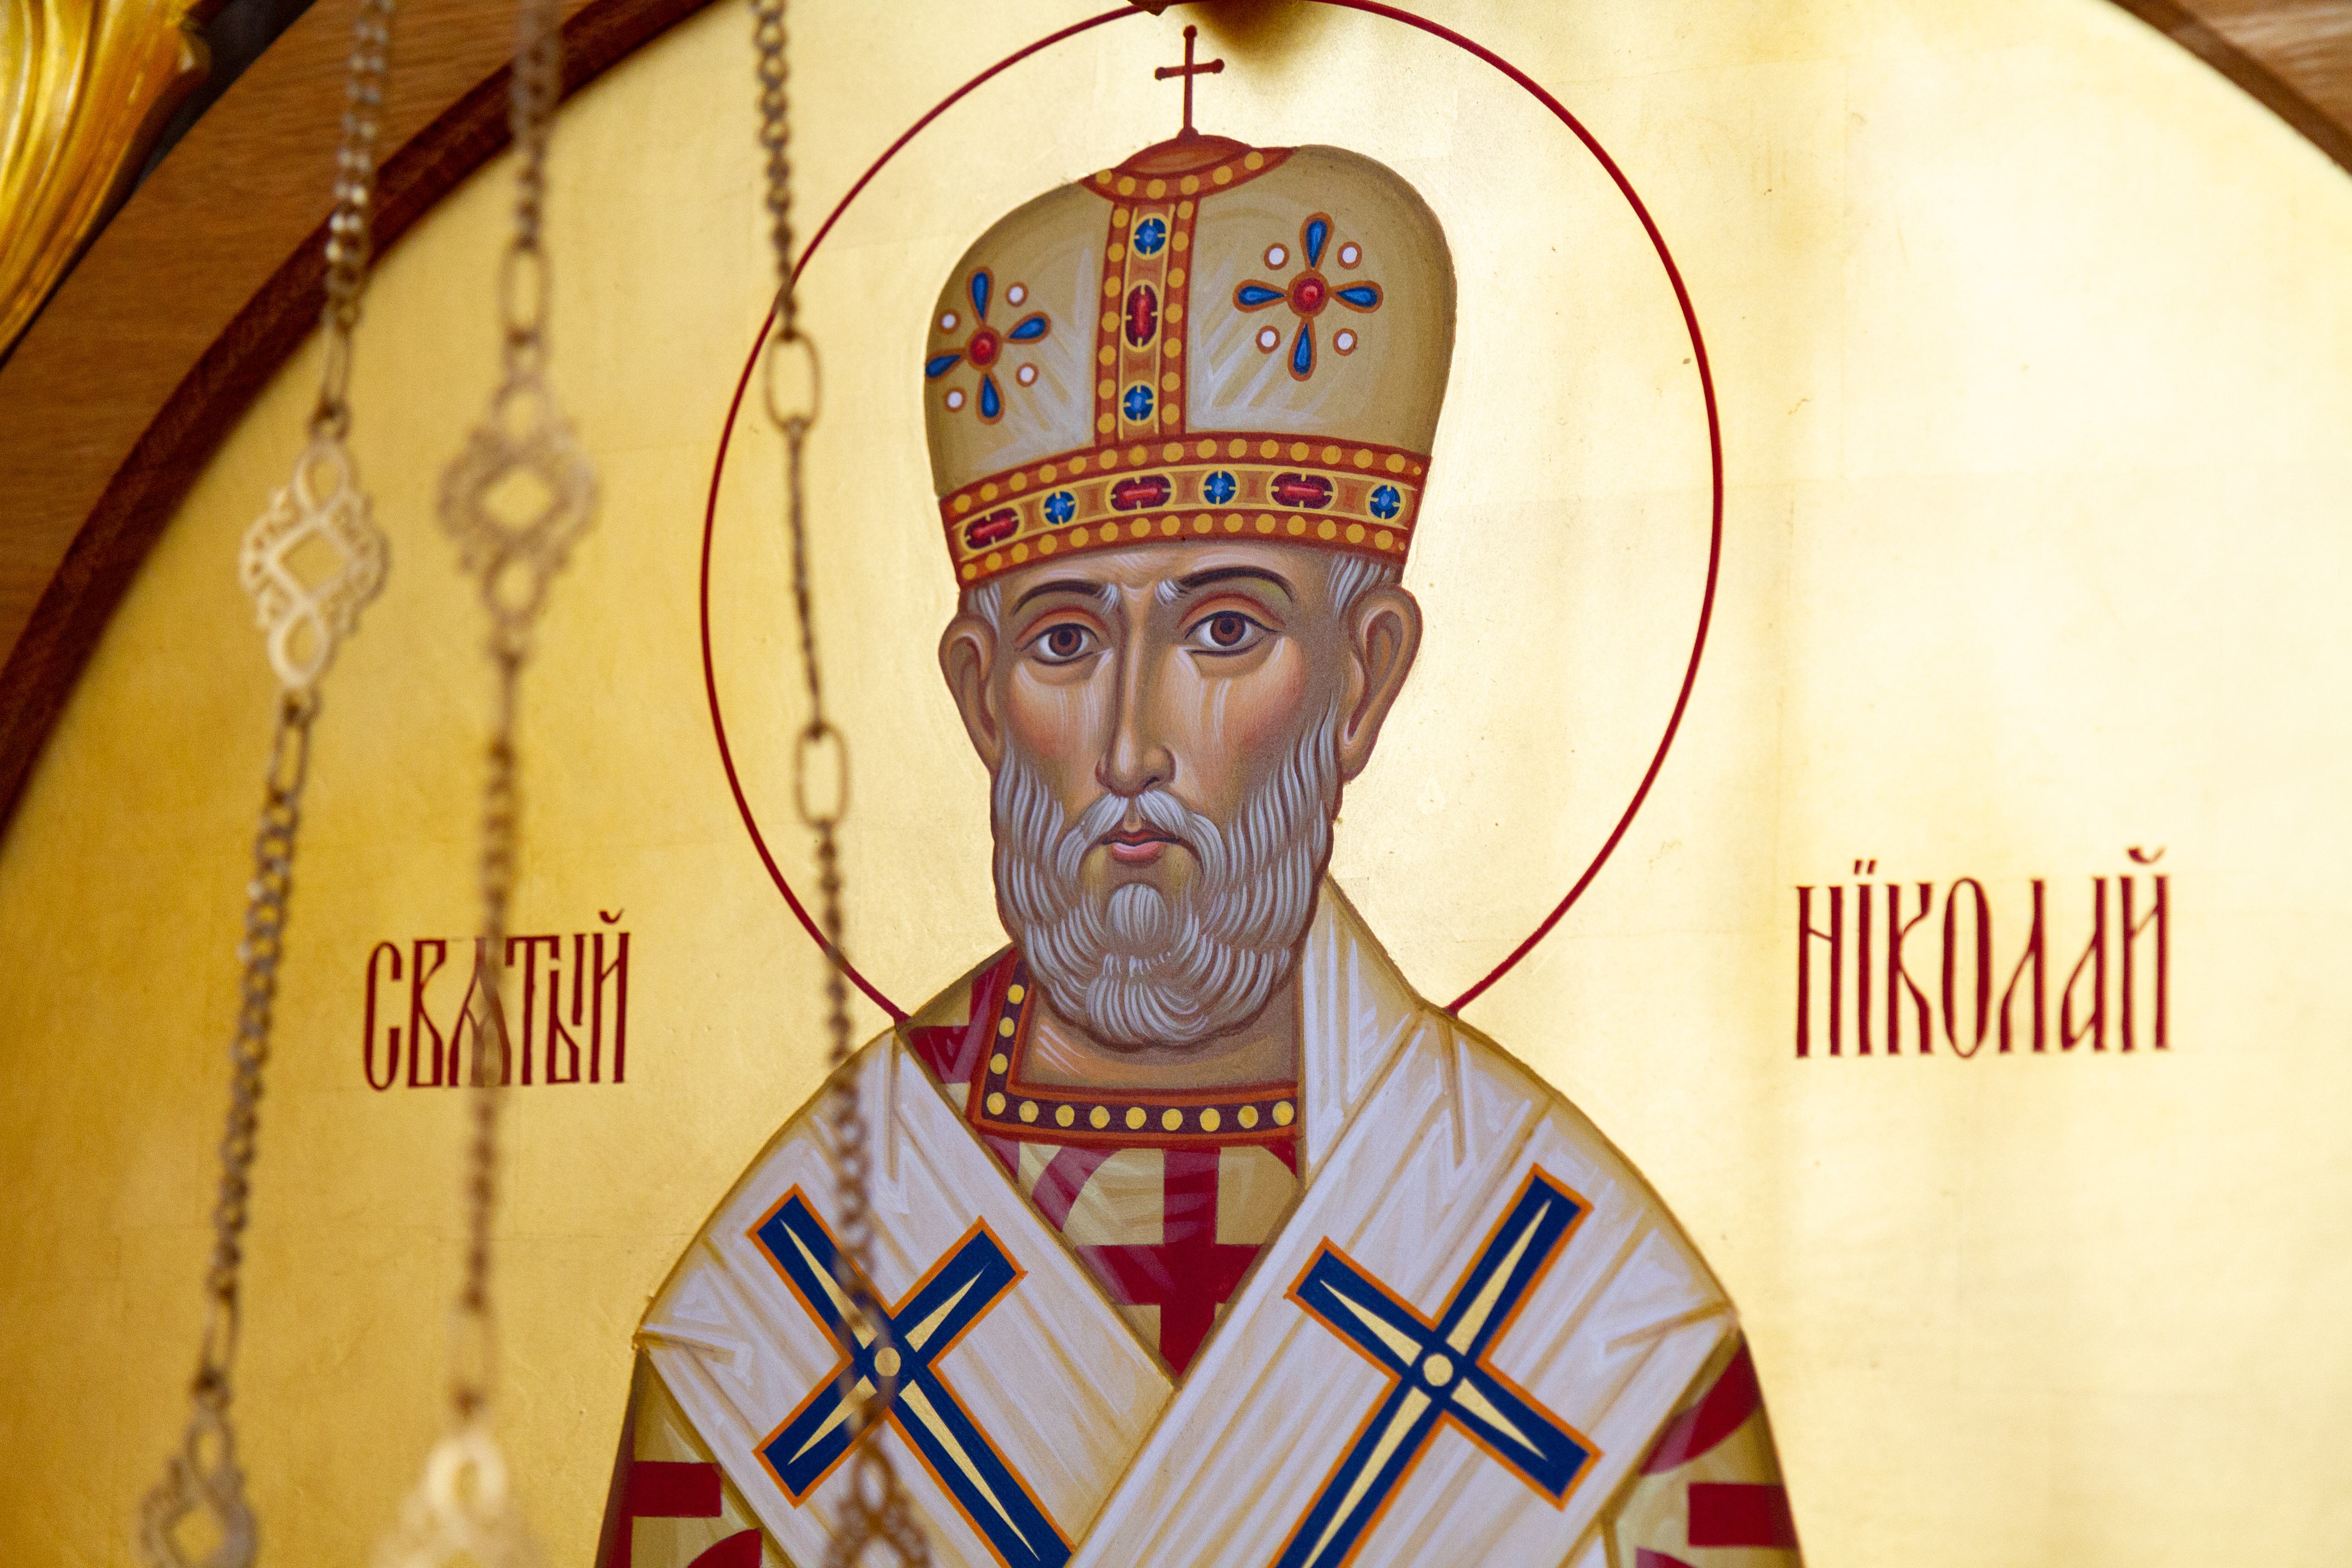 Tradiții și obiceiuri de Sfântul Nicolae de la noi și din lume